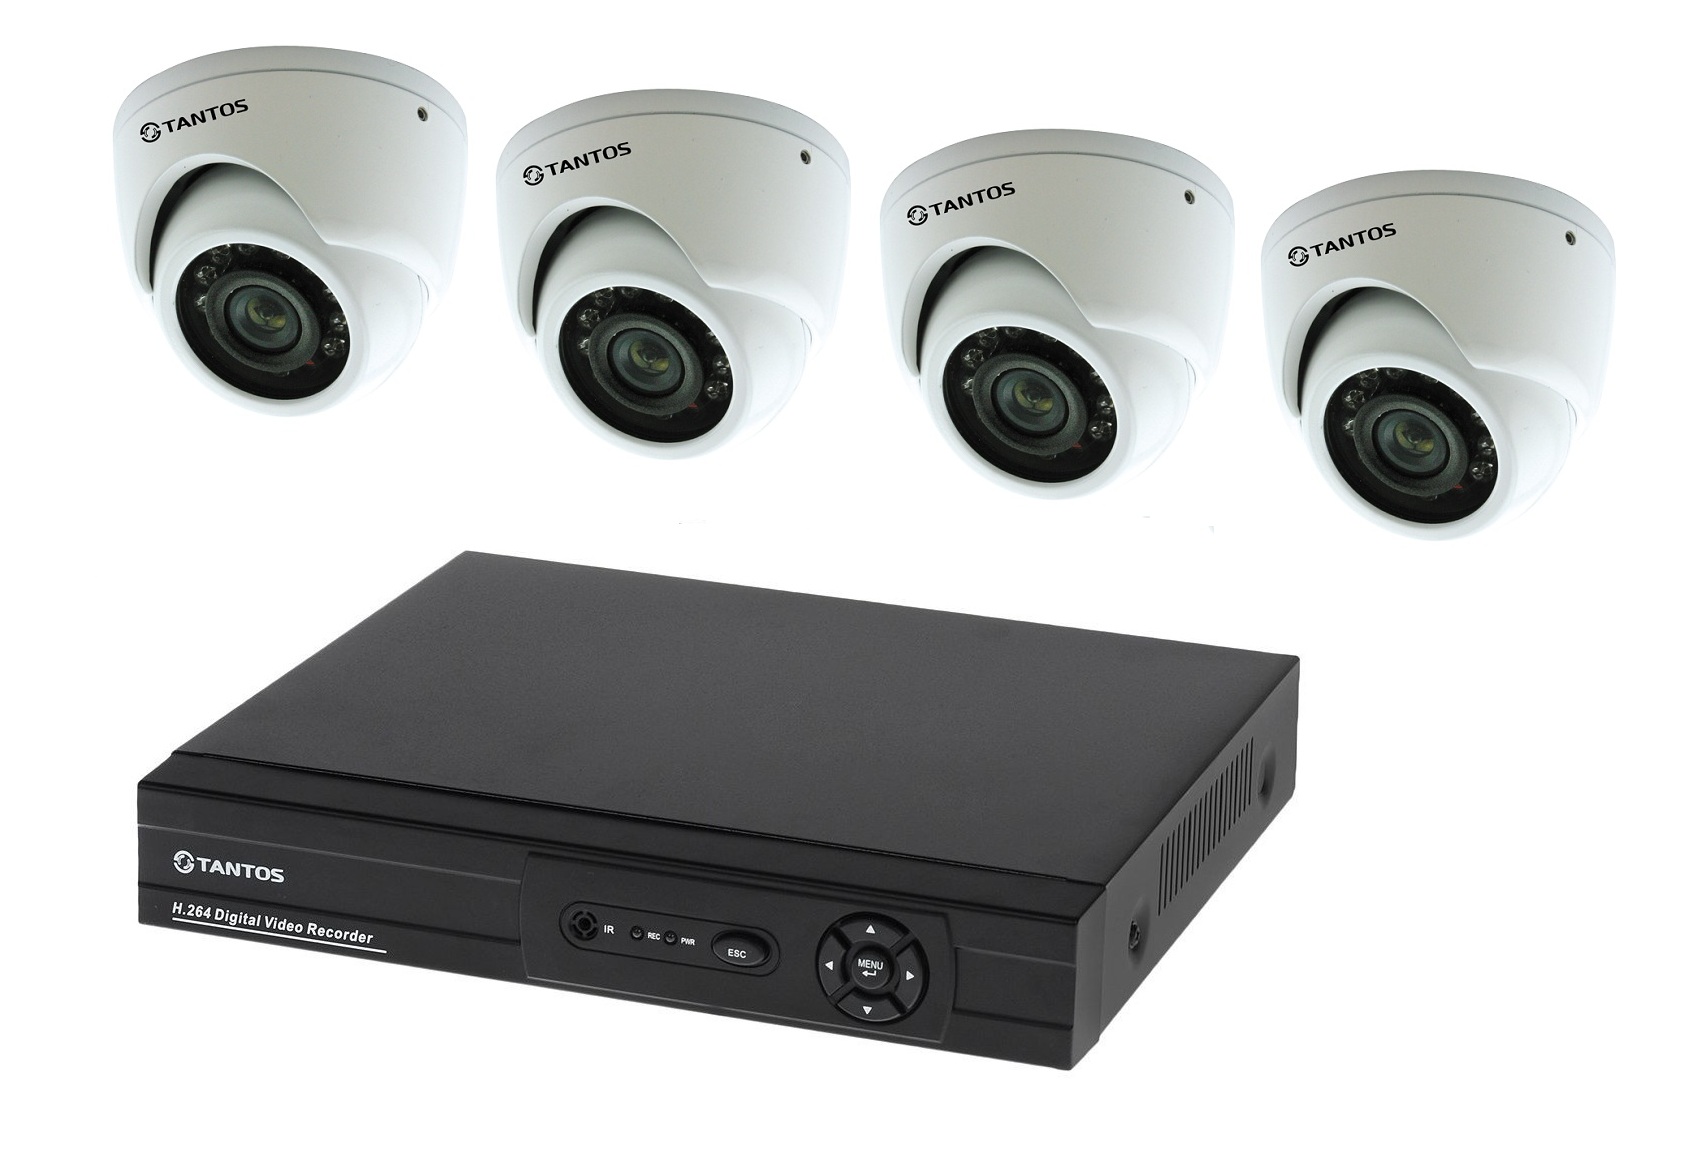 Регистратор комплекс. Комплект видеонаблюдения "tantos Страж-4". Камера видеонаблюдения XPX комплект н.264. Комплект видеонаблюдения DVR 7204c1 с 4 видеокамерами. Комплект видеонаблюдения установи сам Sony 13кам.